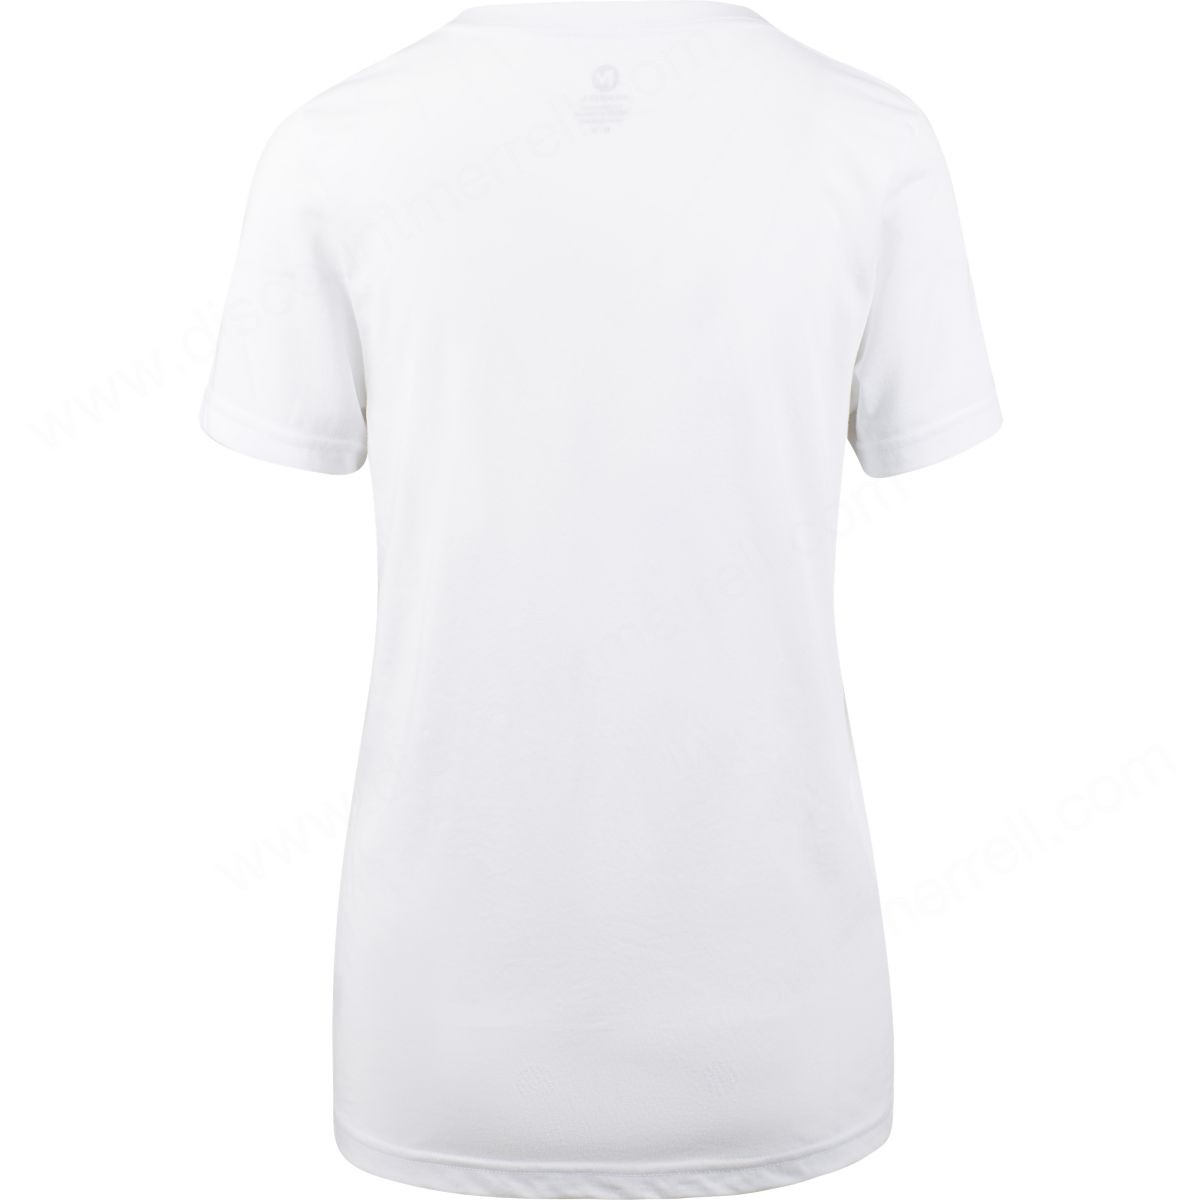 Merrell Womens's Desert Rose T-Shirts White - -1